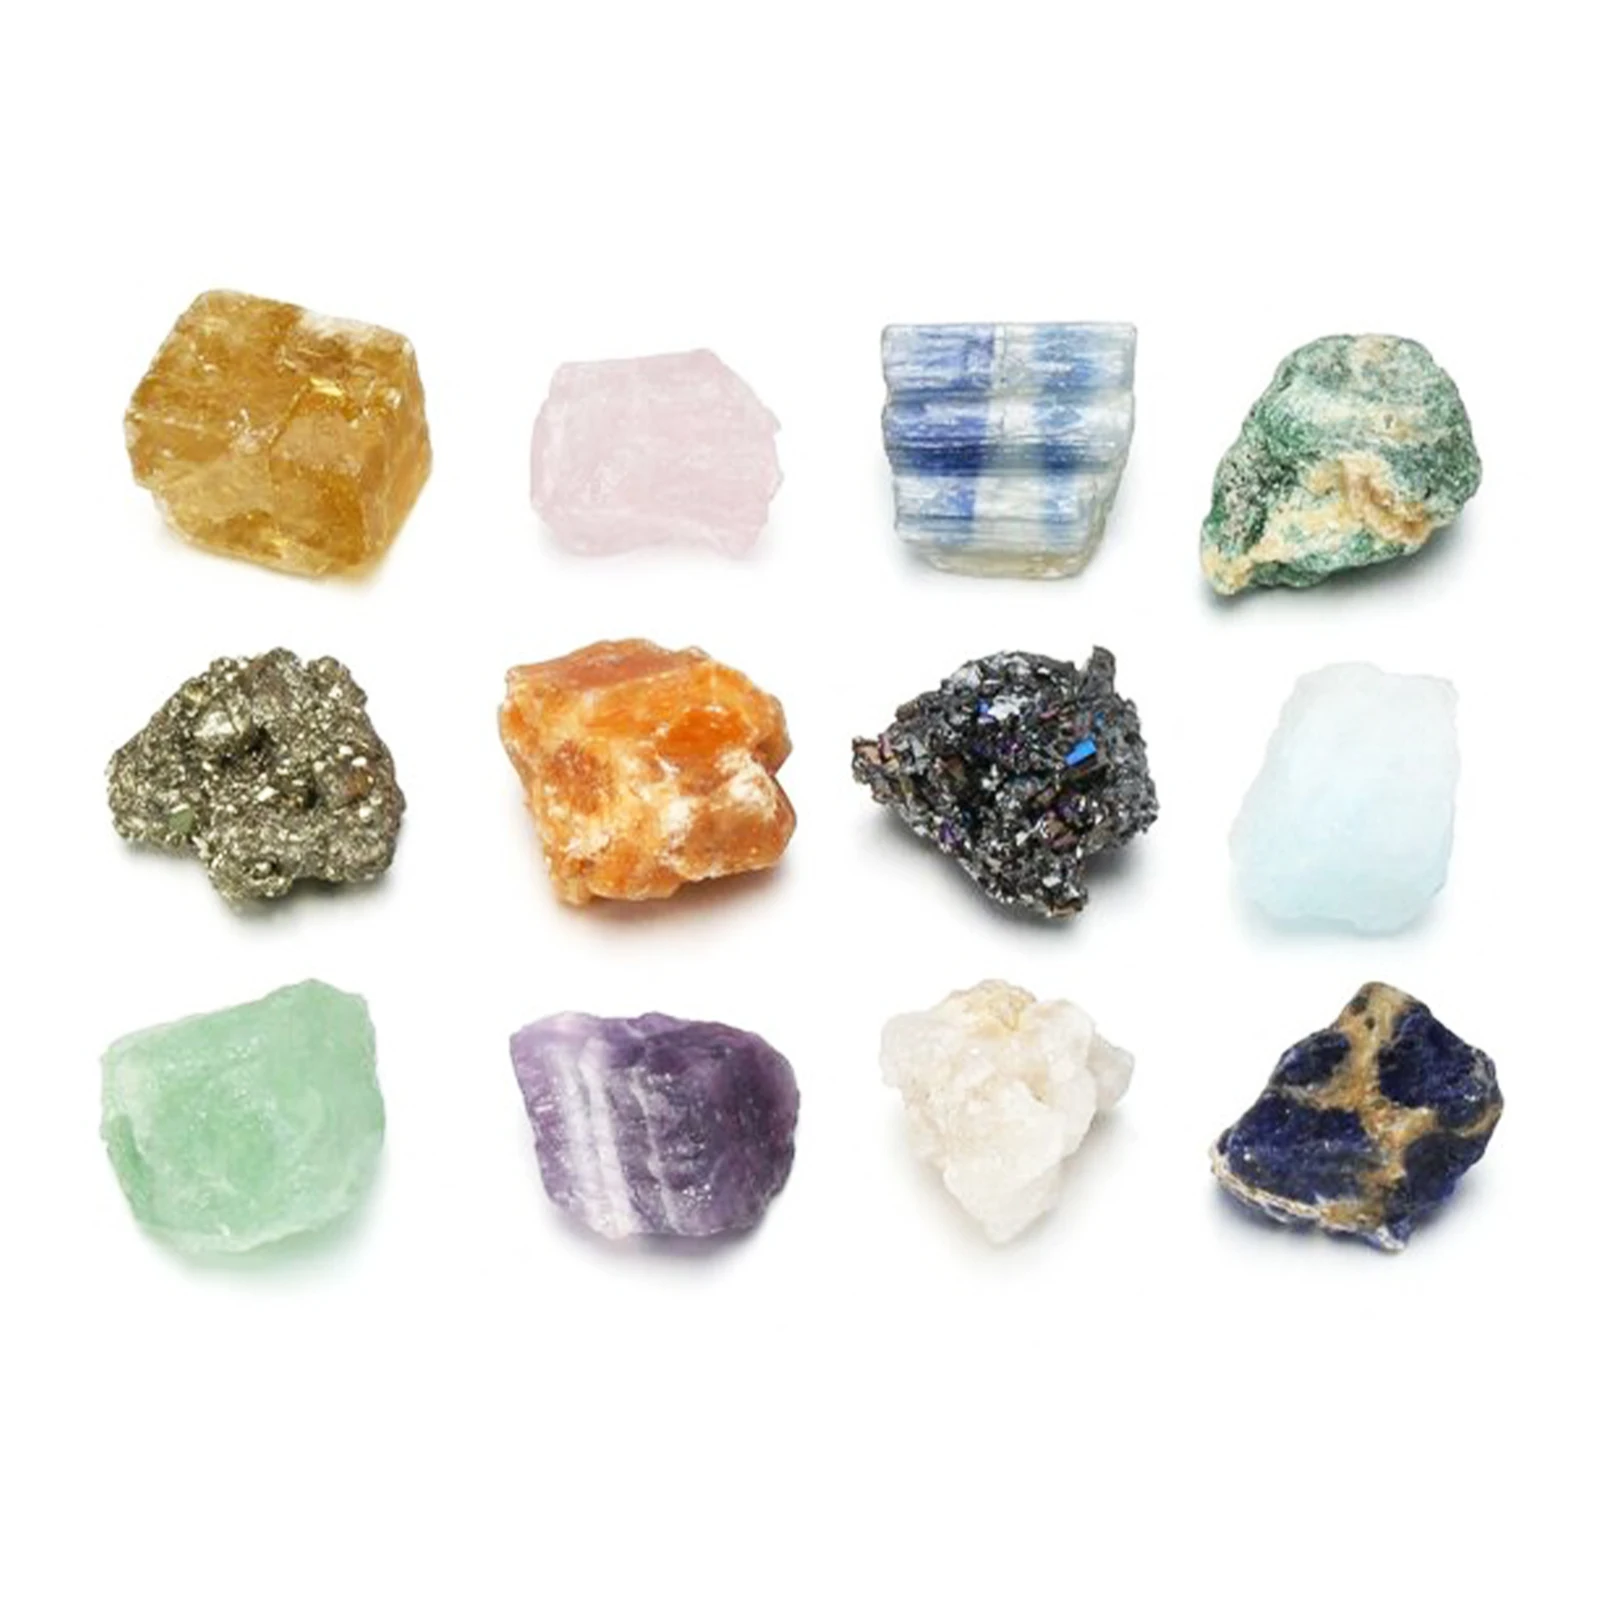 

12 шт./компл. Подарочная коллекция, терапевтические минералы, рабство, медитация, натуральные драгоценные камни, чакра, лечебные кристаллы